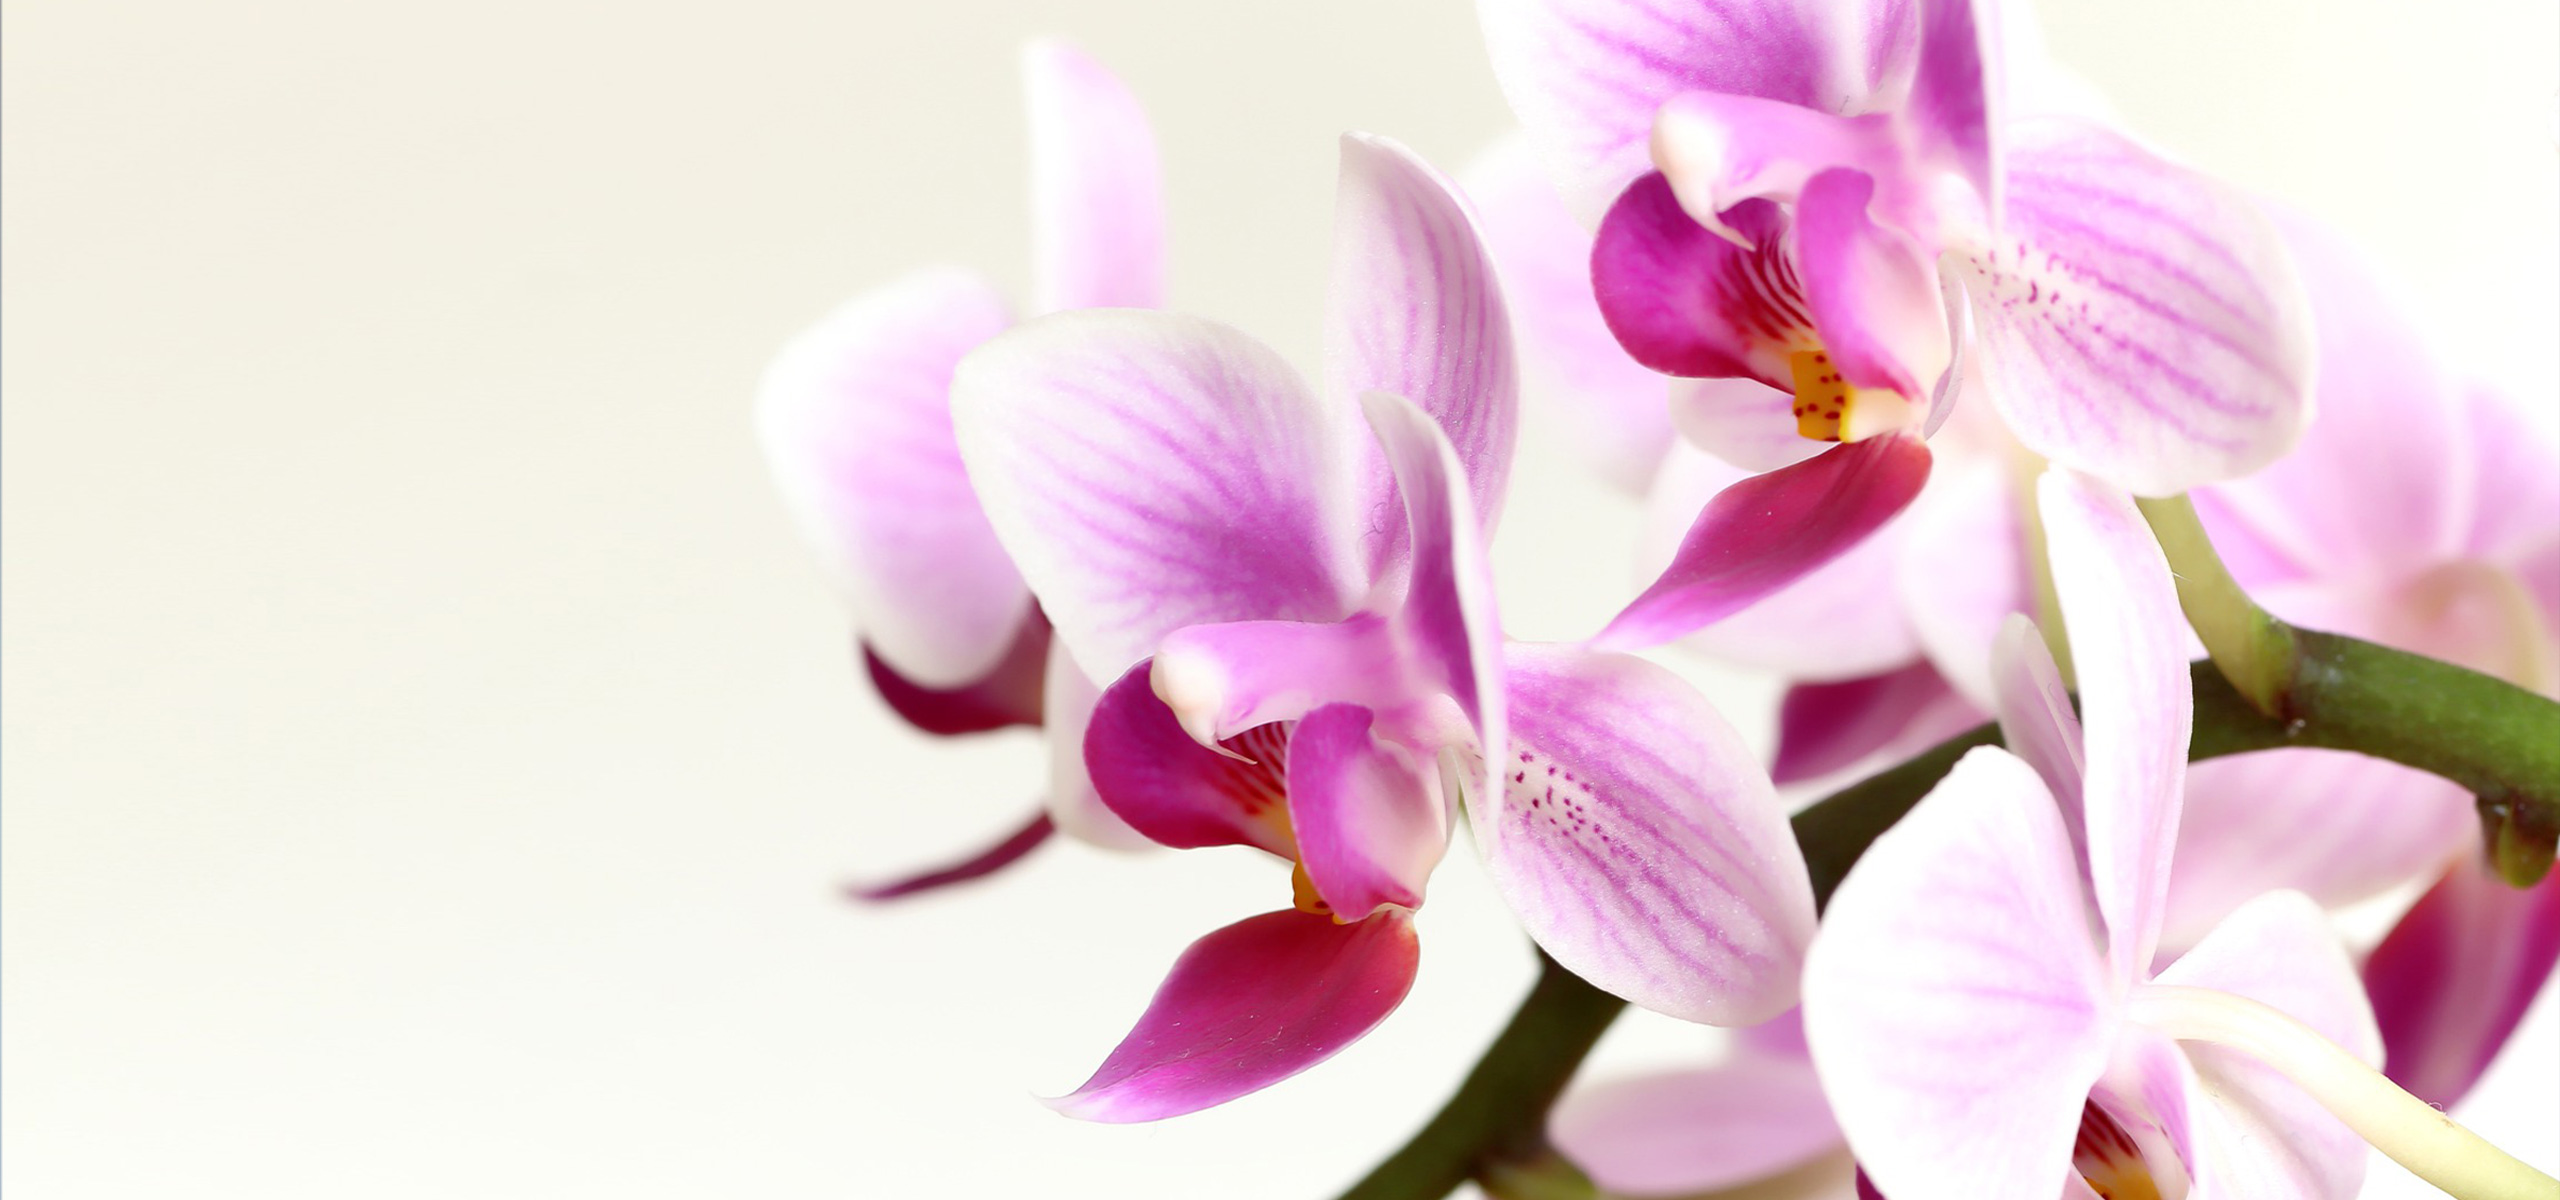 胡蝶蘭 ピンクの胡蝶蘭の花言葉は フラワーギフト マナー お役立ち お知らせ お祝い お供えの花通販ギフトは送料無料の お花の窓口 へ